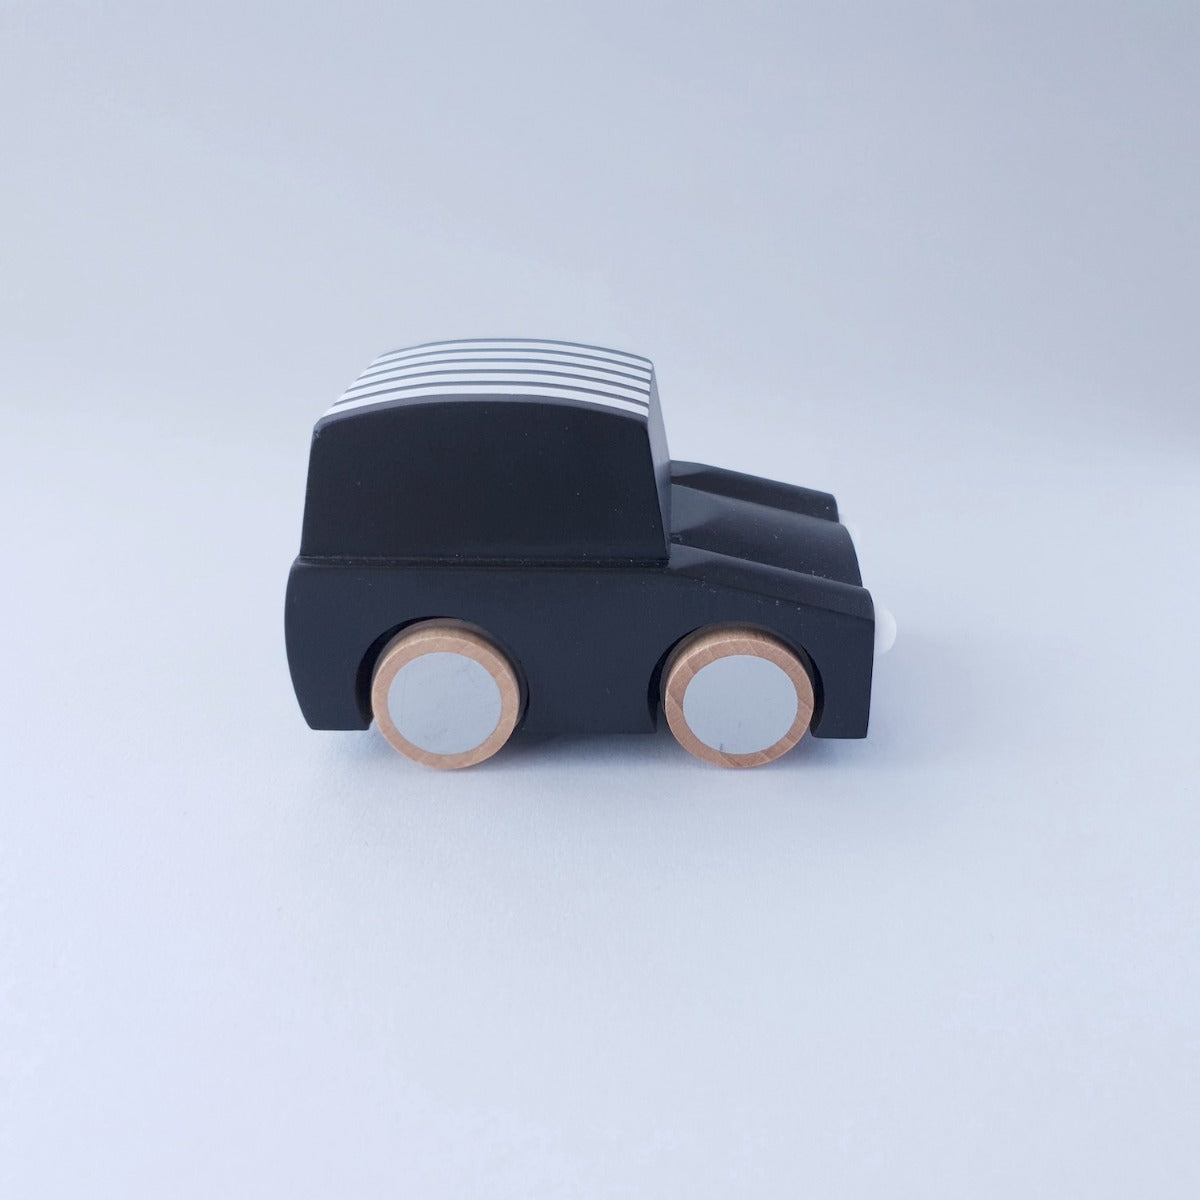 Kiko+ & gg* Wooden Toy Car - Black Stripe